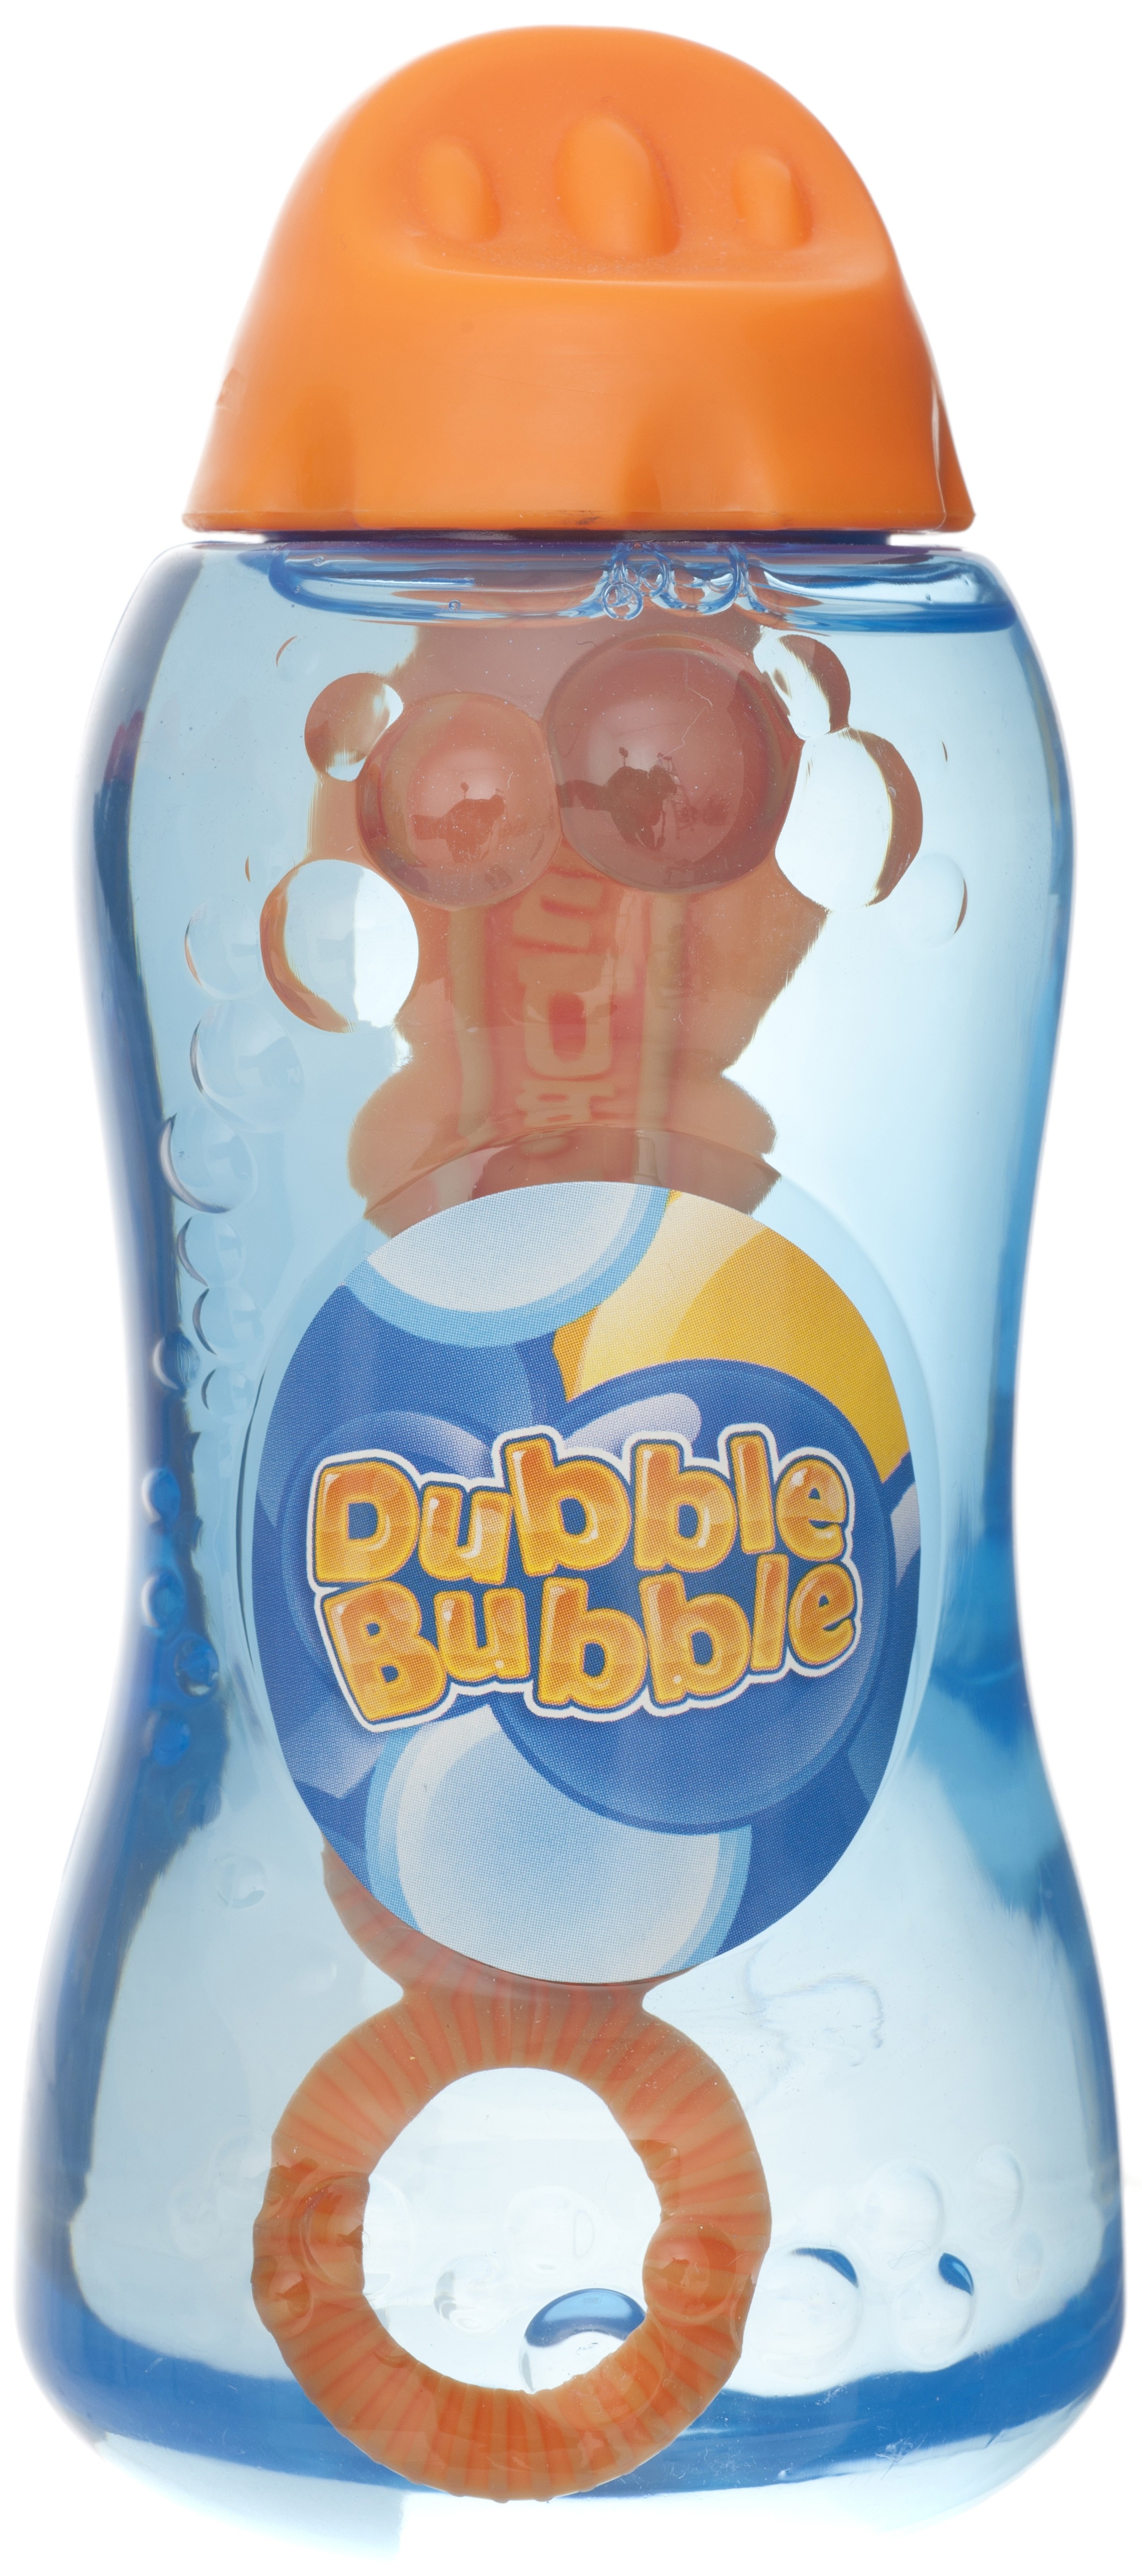 Все ролики дабл бабл. Доубле буббле. Мыльные пузыри бутылка. Мыльные пузыри игрушка. Мыльные пузыри Bigga.